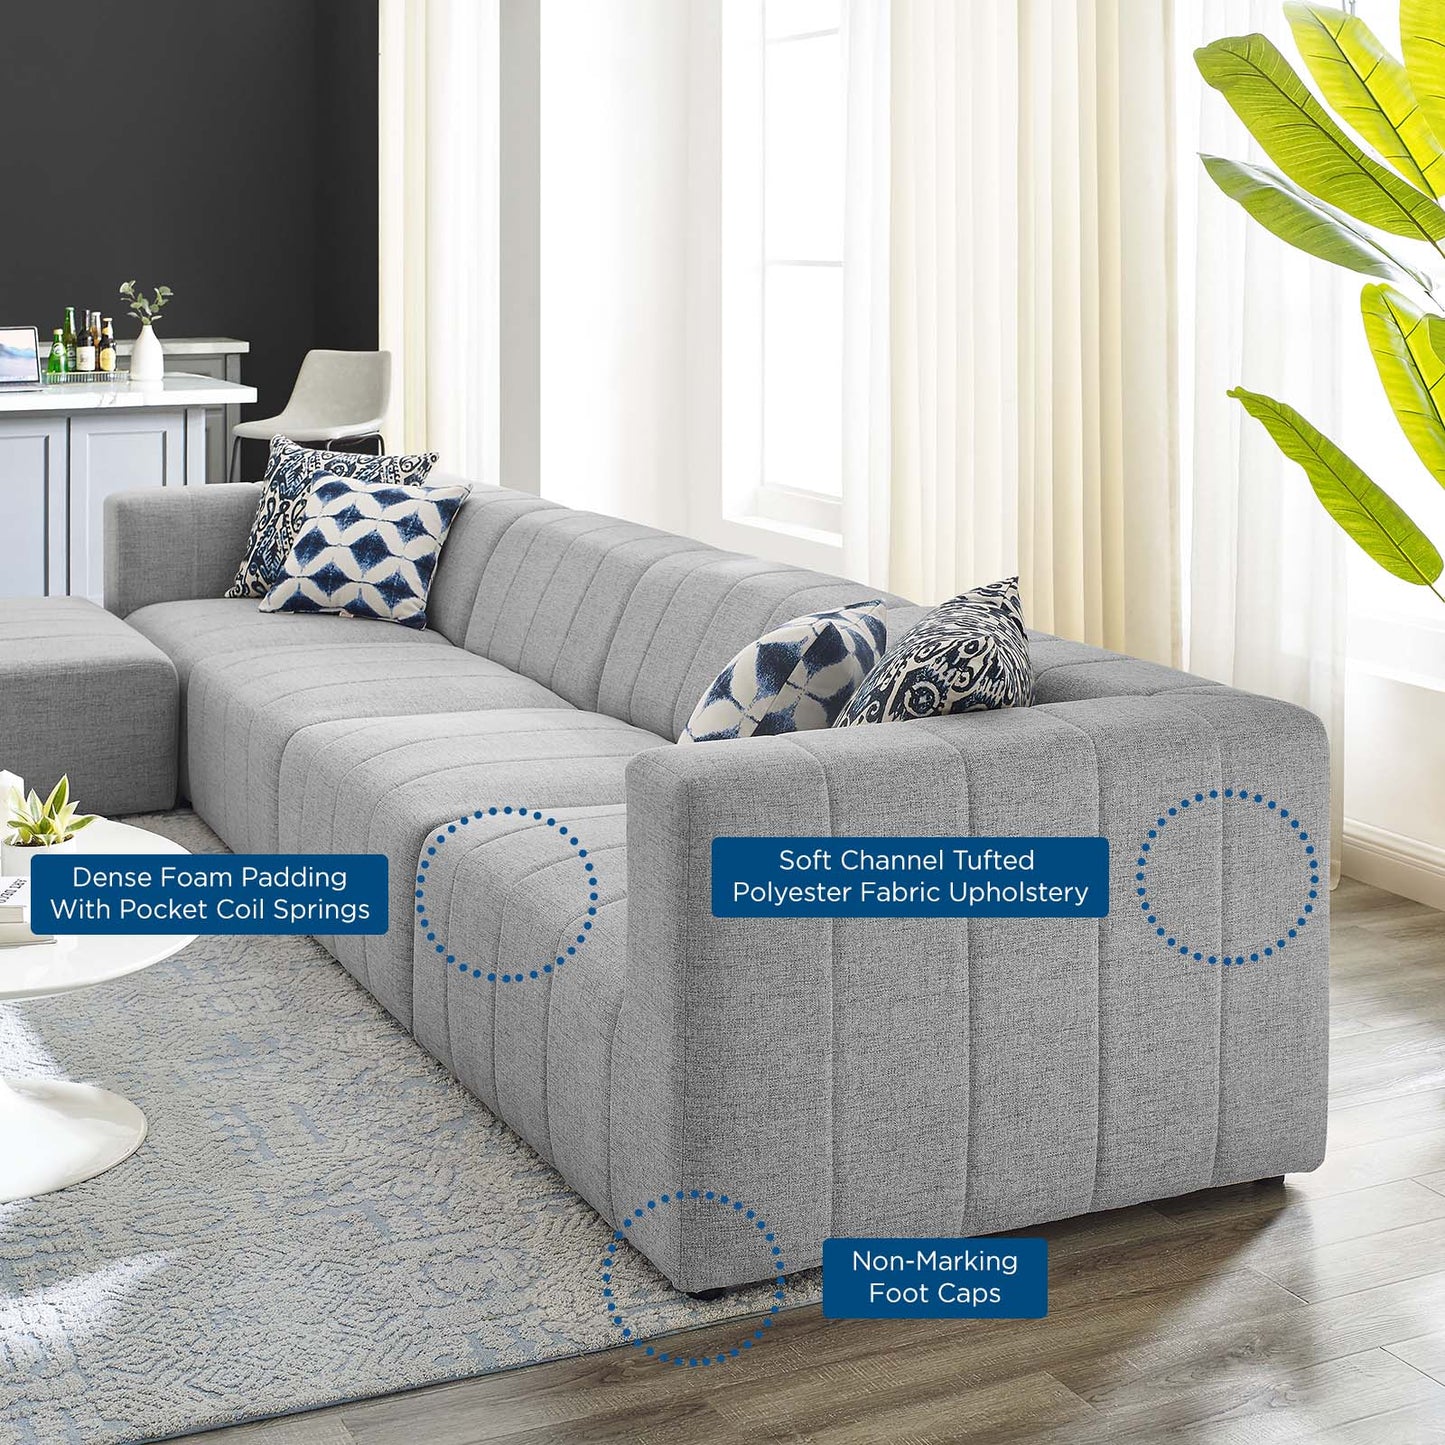 Bartlett Upholstered Fabric 5-Piece Sectional Sofa Light Gray EEI-4520-LGR